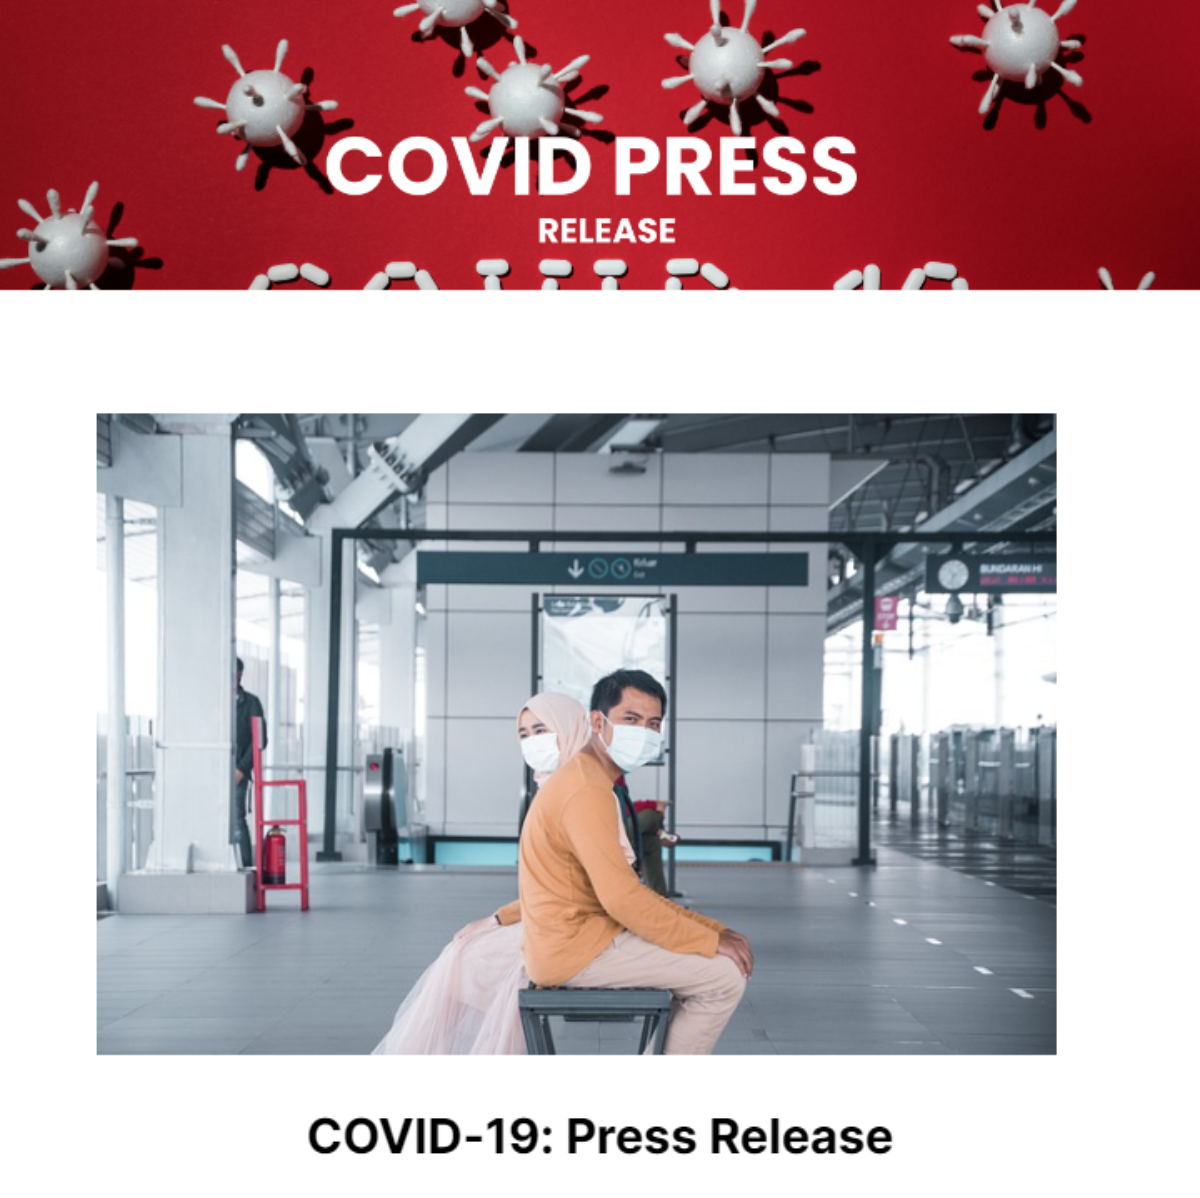 Free Covid Press Release Template